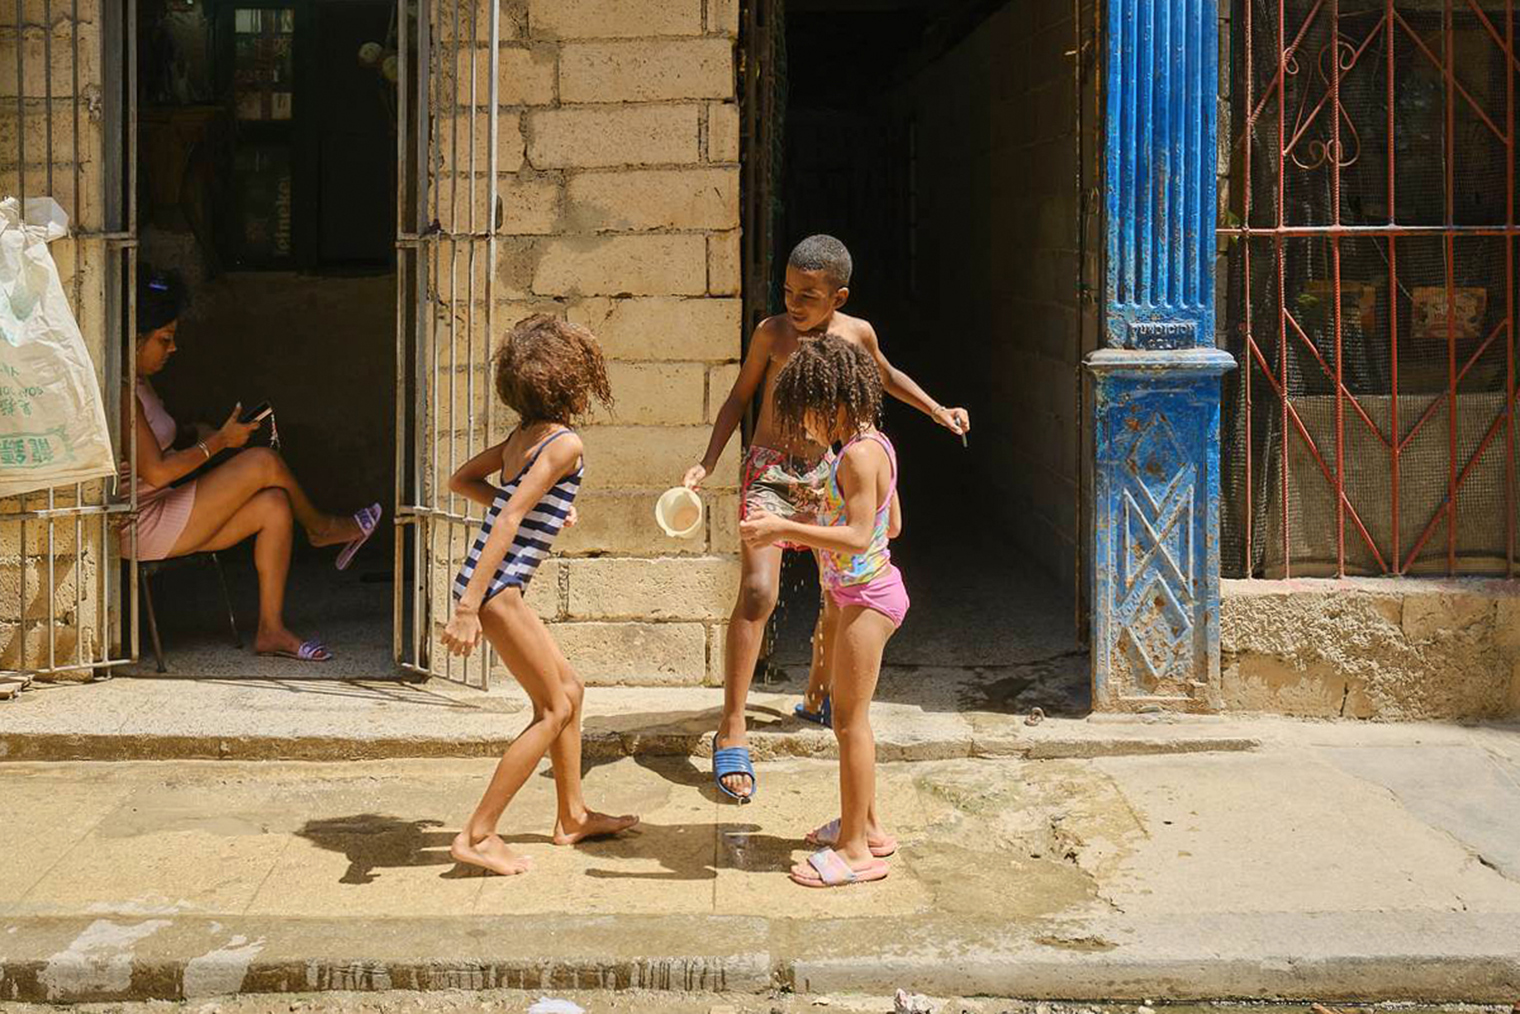 В Старой Гаване теснее и больше людей, а на окраинах улицы зачастую превращаются в место, чтобы поиграть в догонялки, футбол или баскетбол. На фото — игры детей из Старой Гаваны. Паренек окатил холодной водой одну из девочек, чем спровоцировал небольшой скандал